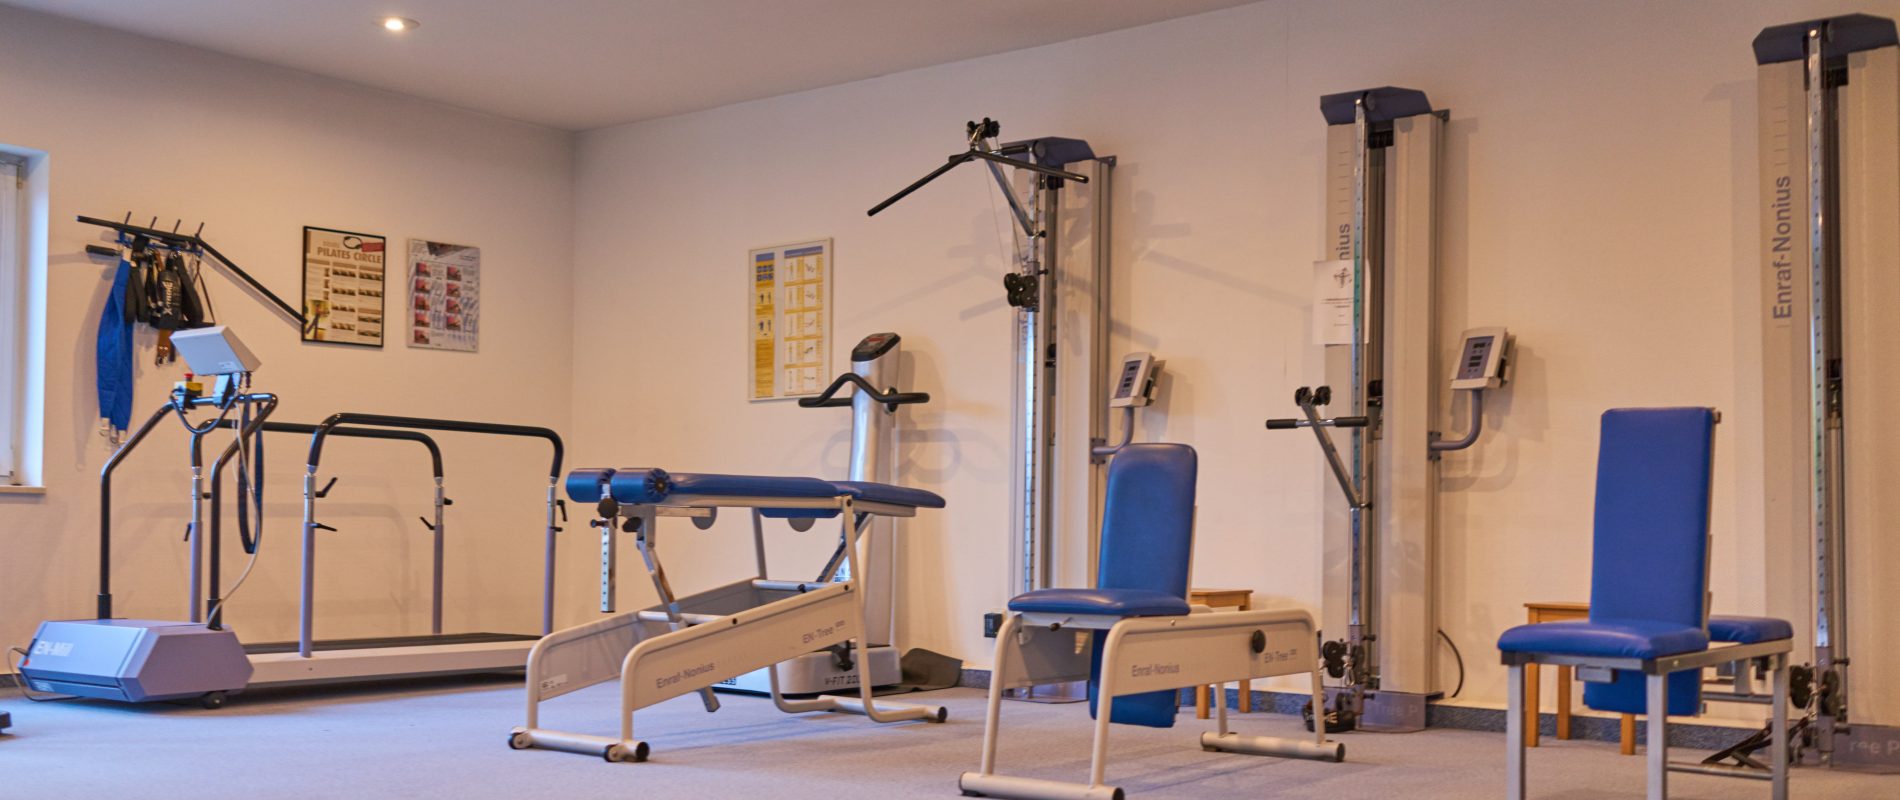 Physiotherapie & Osteopathie in Pasewalk: Raum für Physio-Fitness